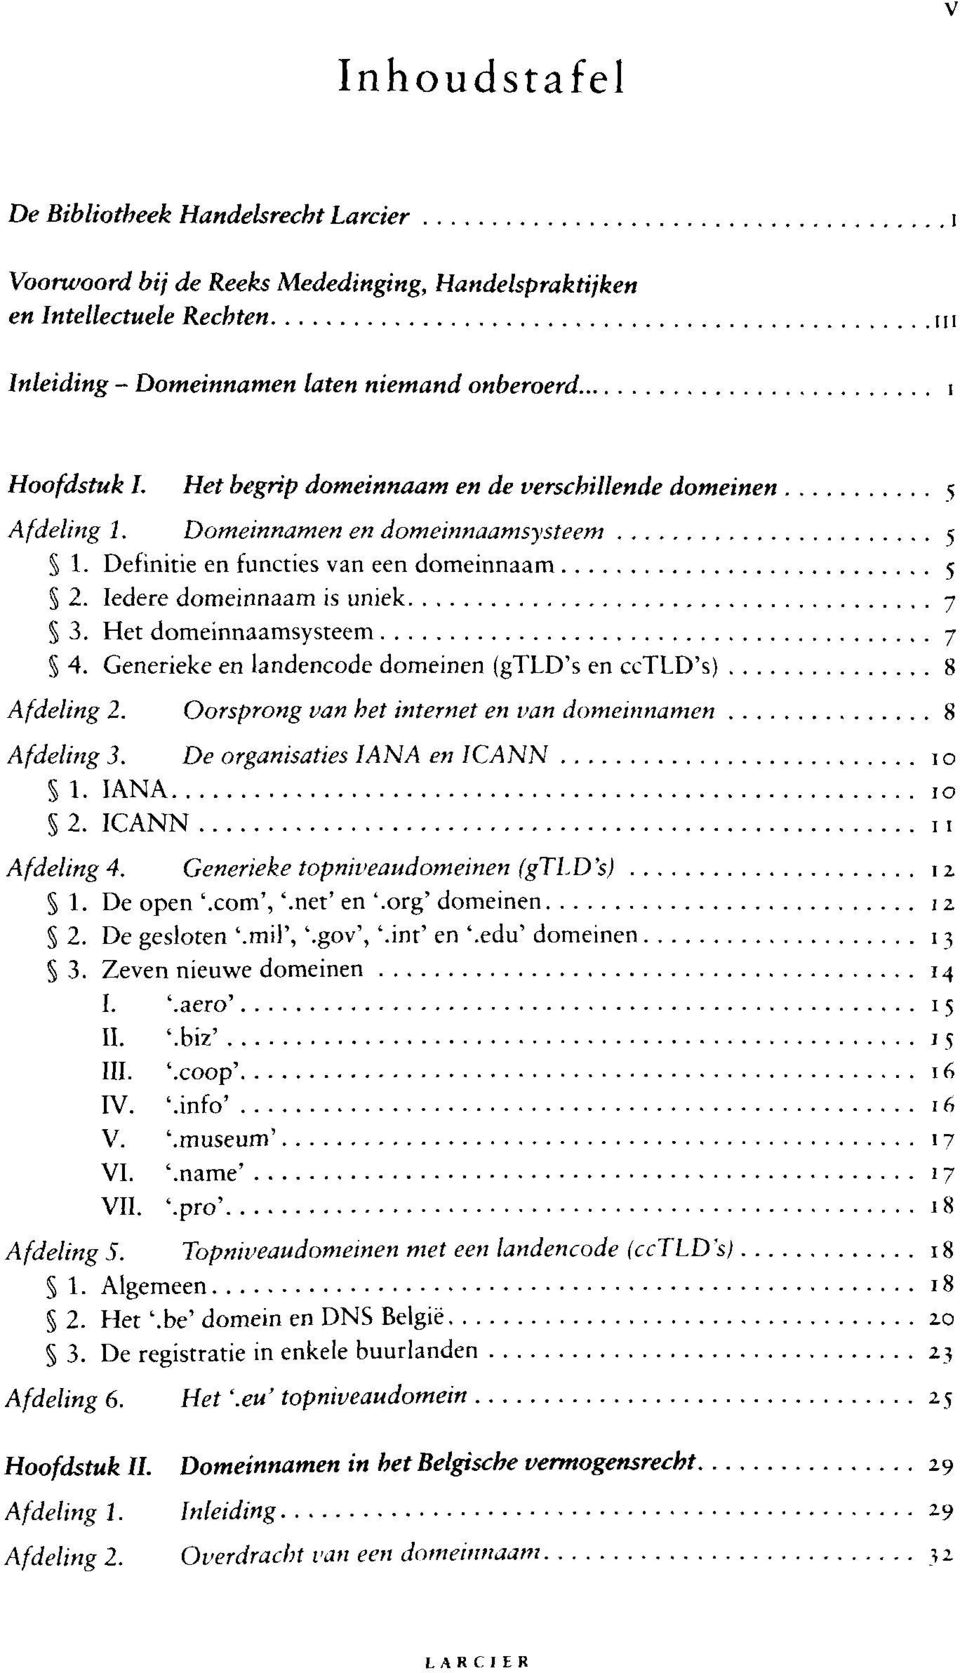 Het domeinnaamsysteem 7 4. Generieke en landencode domeinen (gtld's en cctld's) 8 Afdeling 2. Oorsprong van het internet en van domeinnamen 8 Af deling 3. De organisaties IAN A en ICANN 10 S 1.